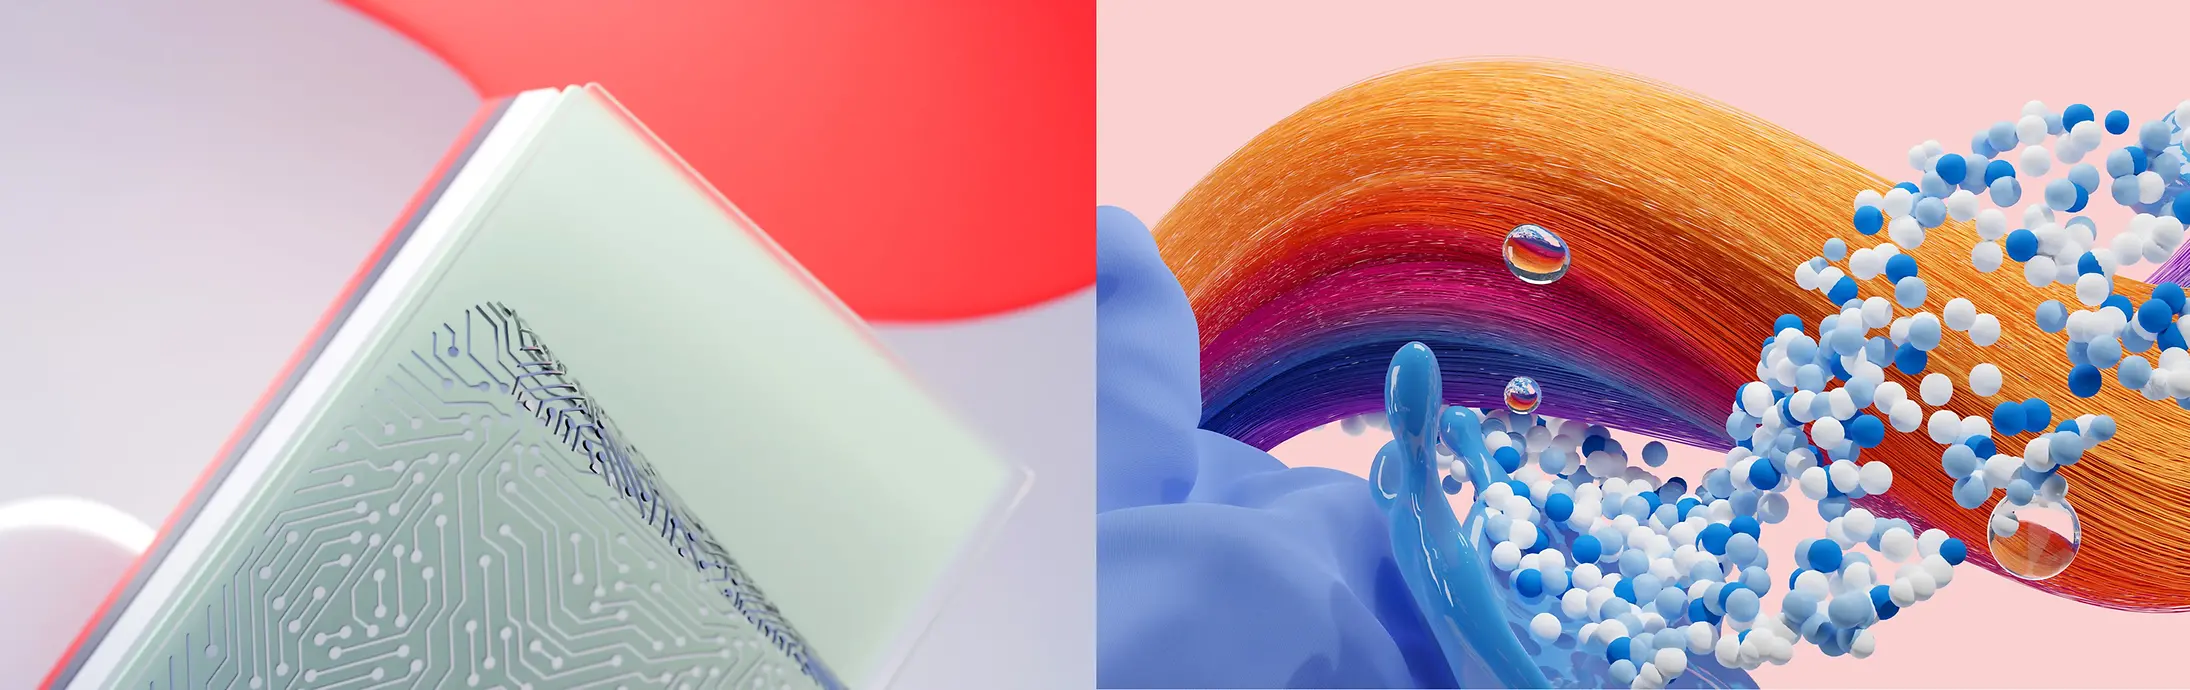 Абстрактне зображення, що символізує напрями діяльності компанії «Хенкель»: клейові технології, засоби для догляду за волоссям, засоби для прання та догляду за оселею.